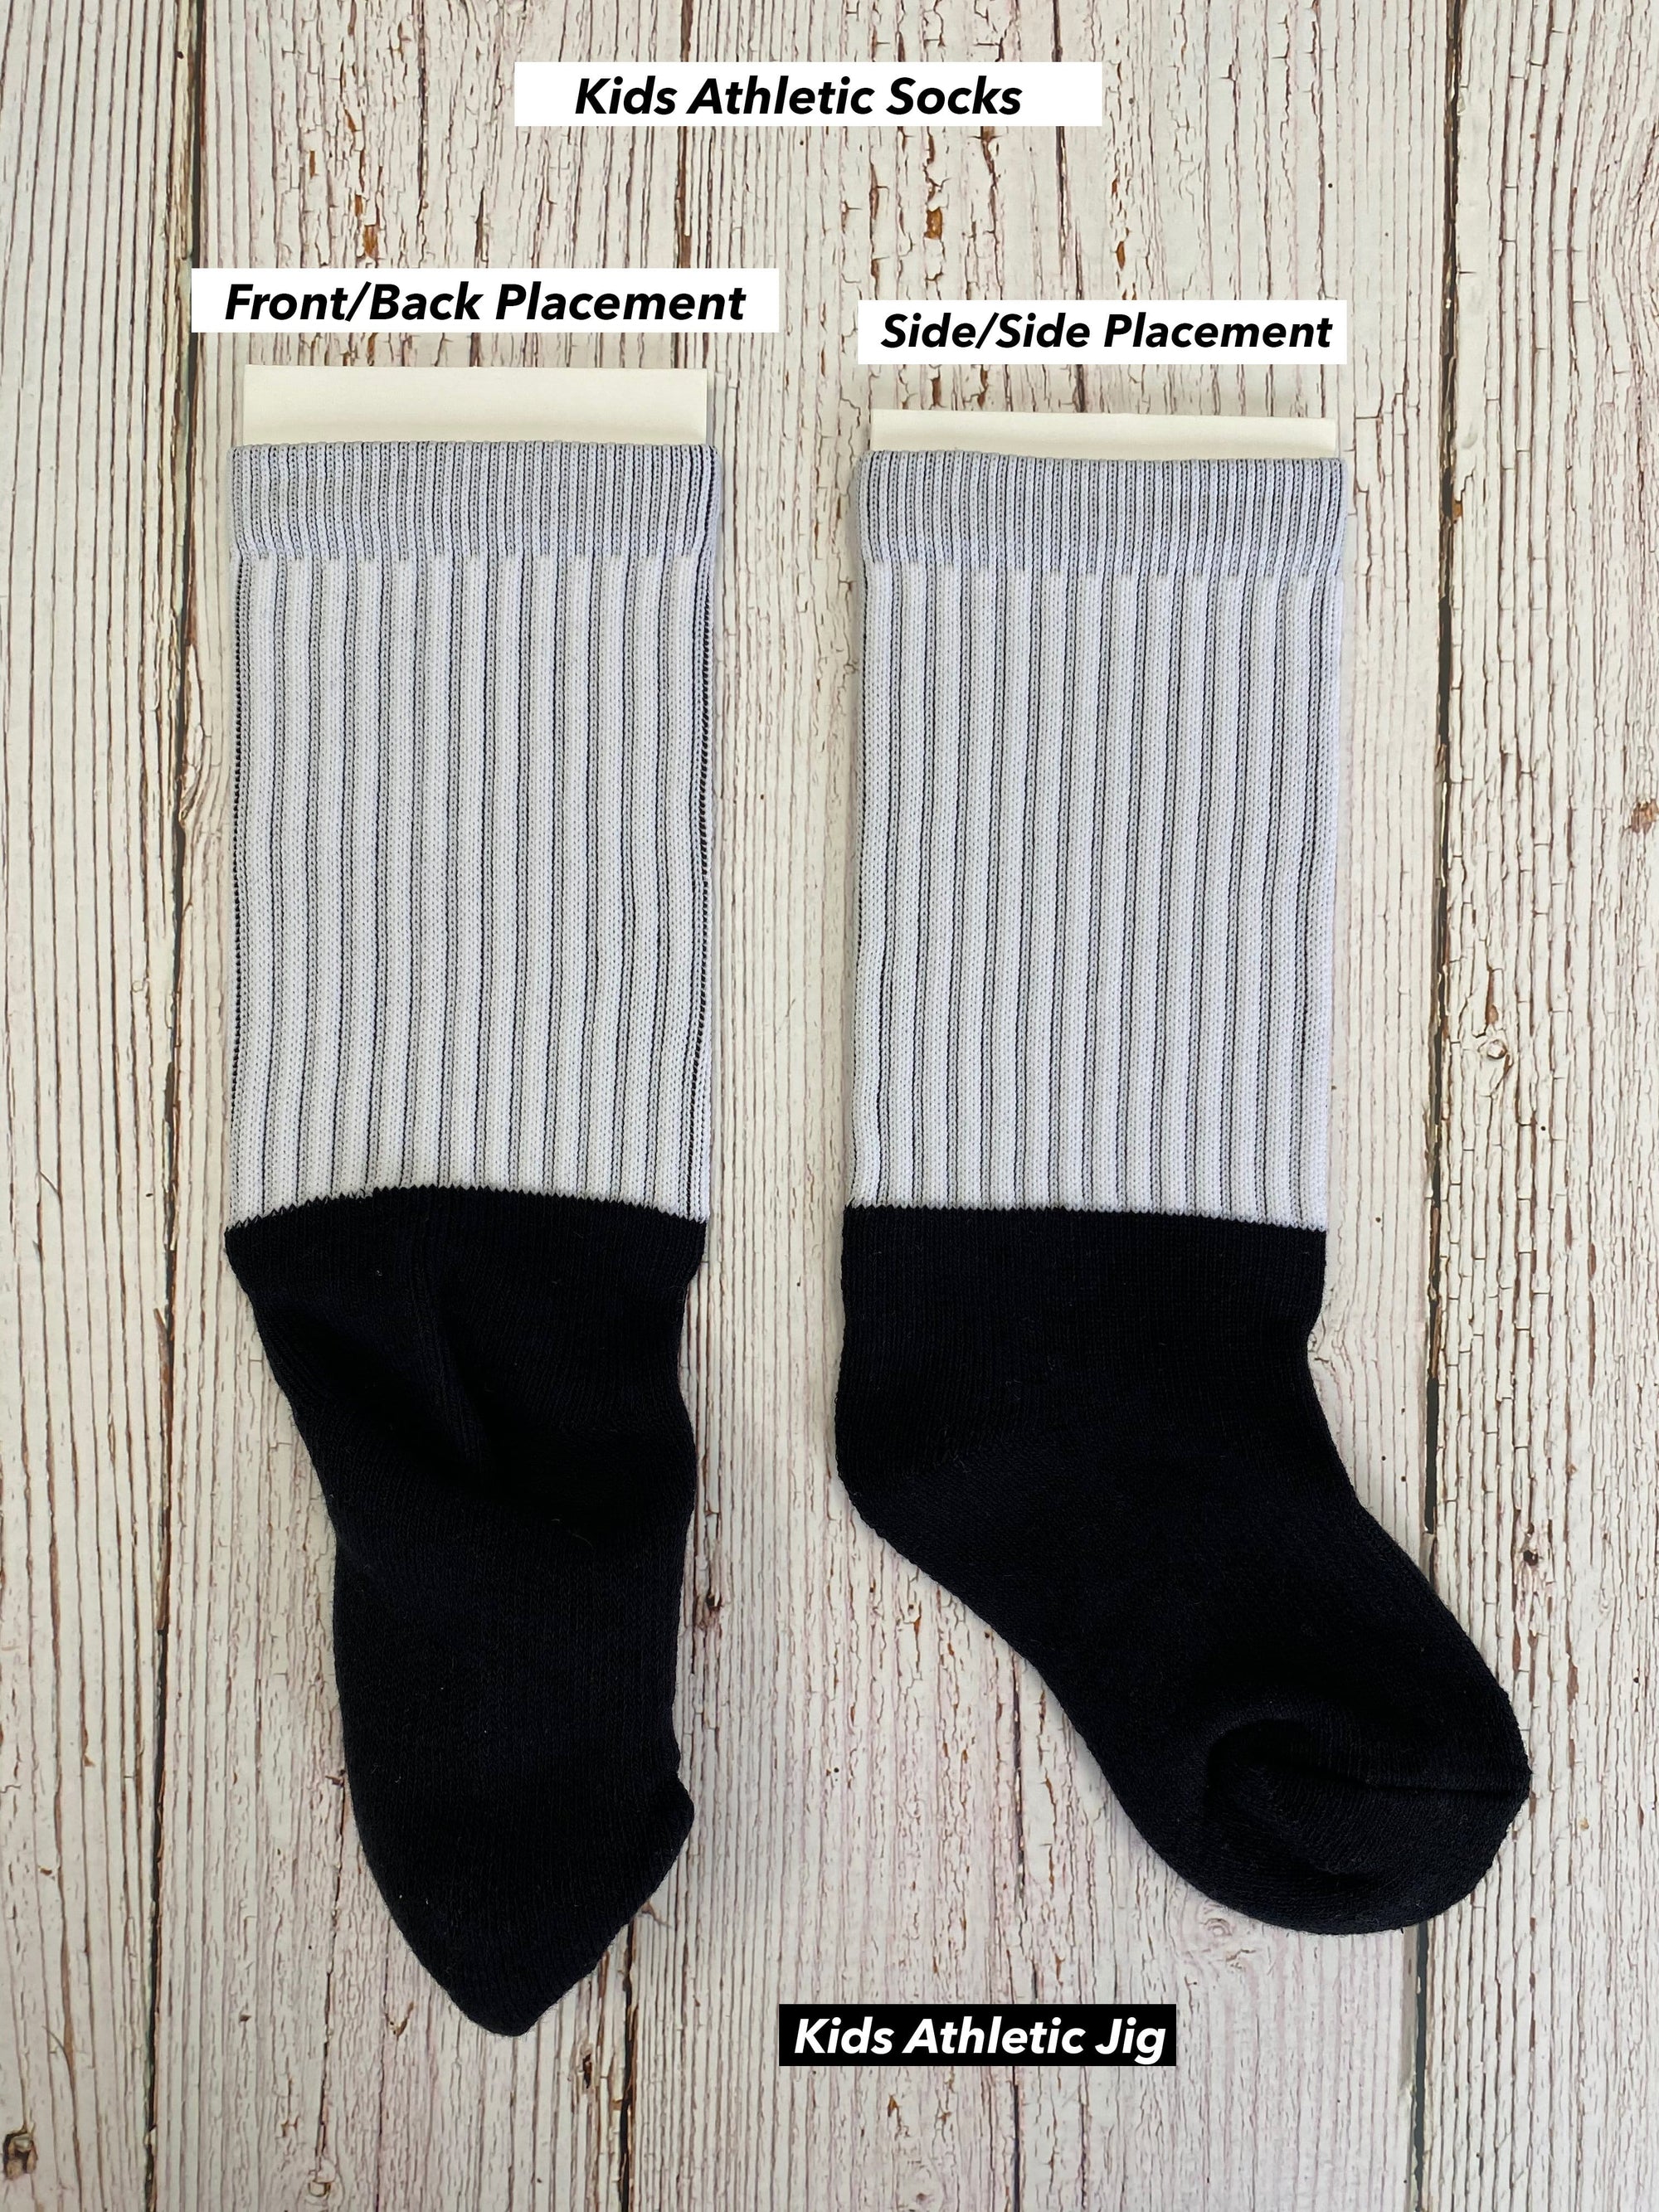 Inserts/Jigs for Kids Socks